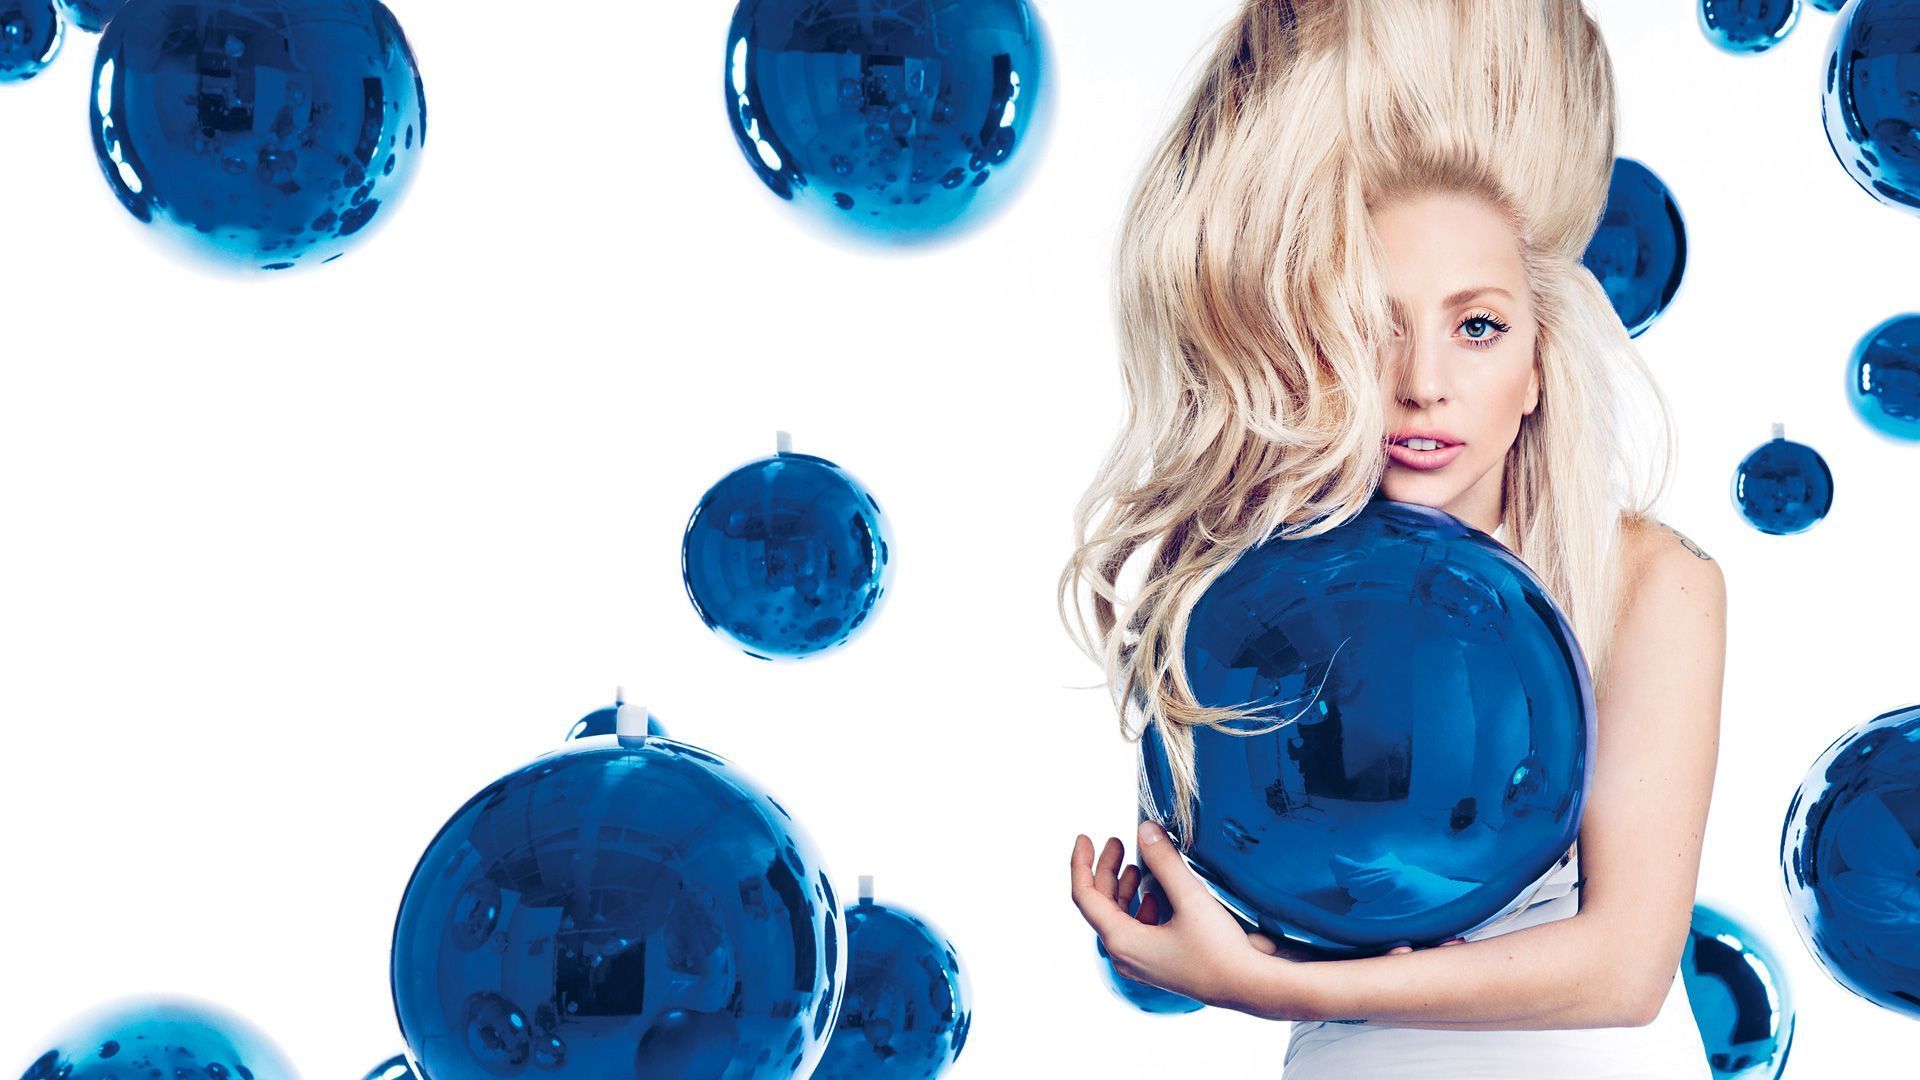 Lady Gaga Desktop Wallpapers - Wallpaper Cave